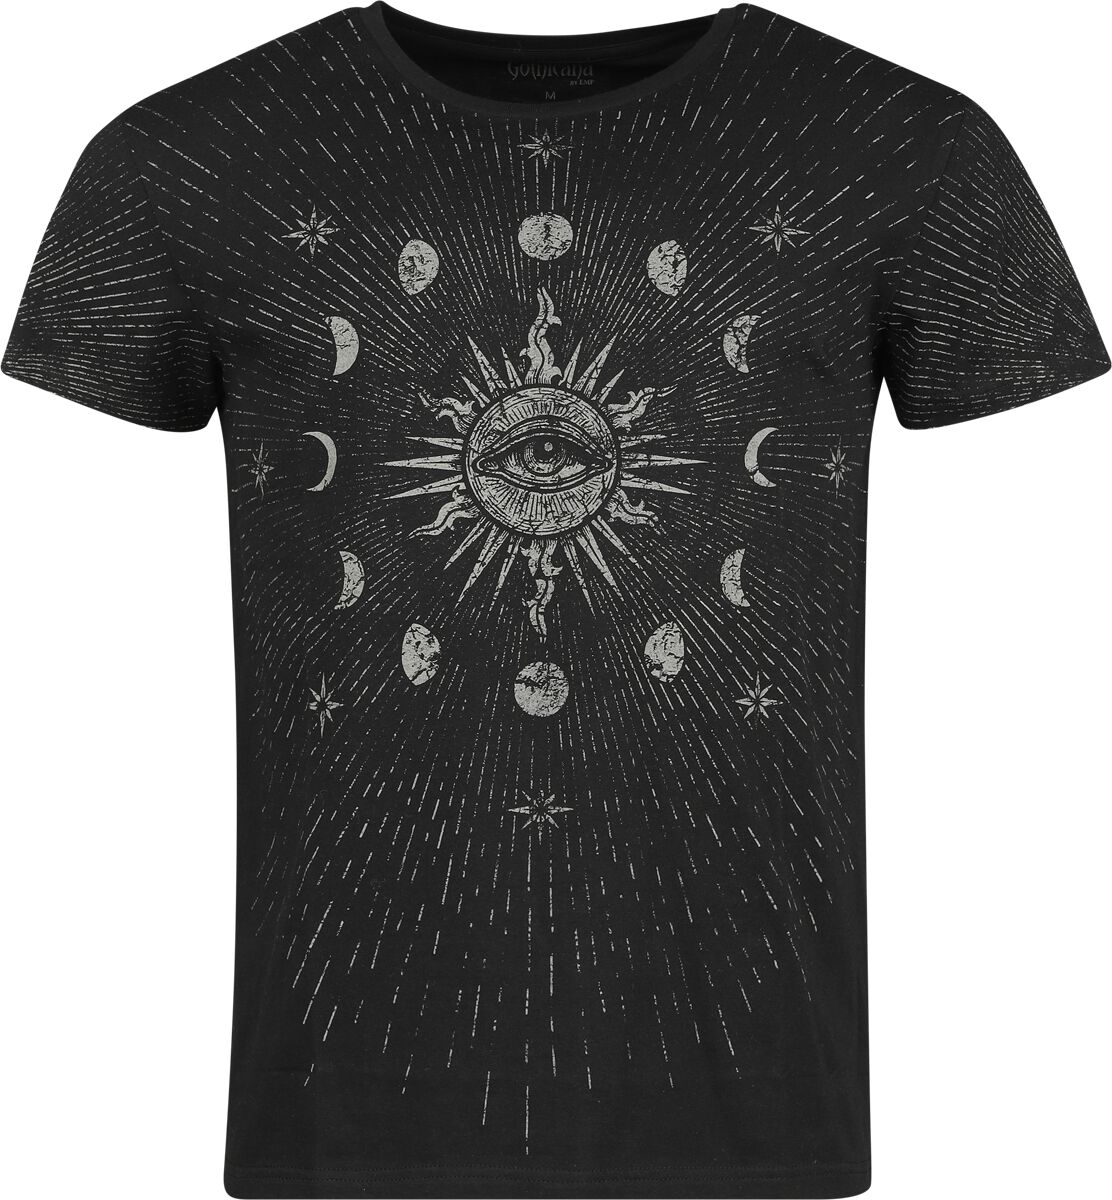 Gothicana by EMP T-Shirt - T-Shirt with Moon Phases and Sun - S bis XXL - für Männer - Größe M - schwarz